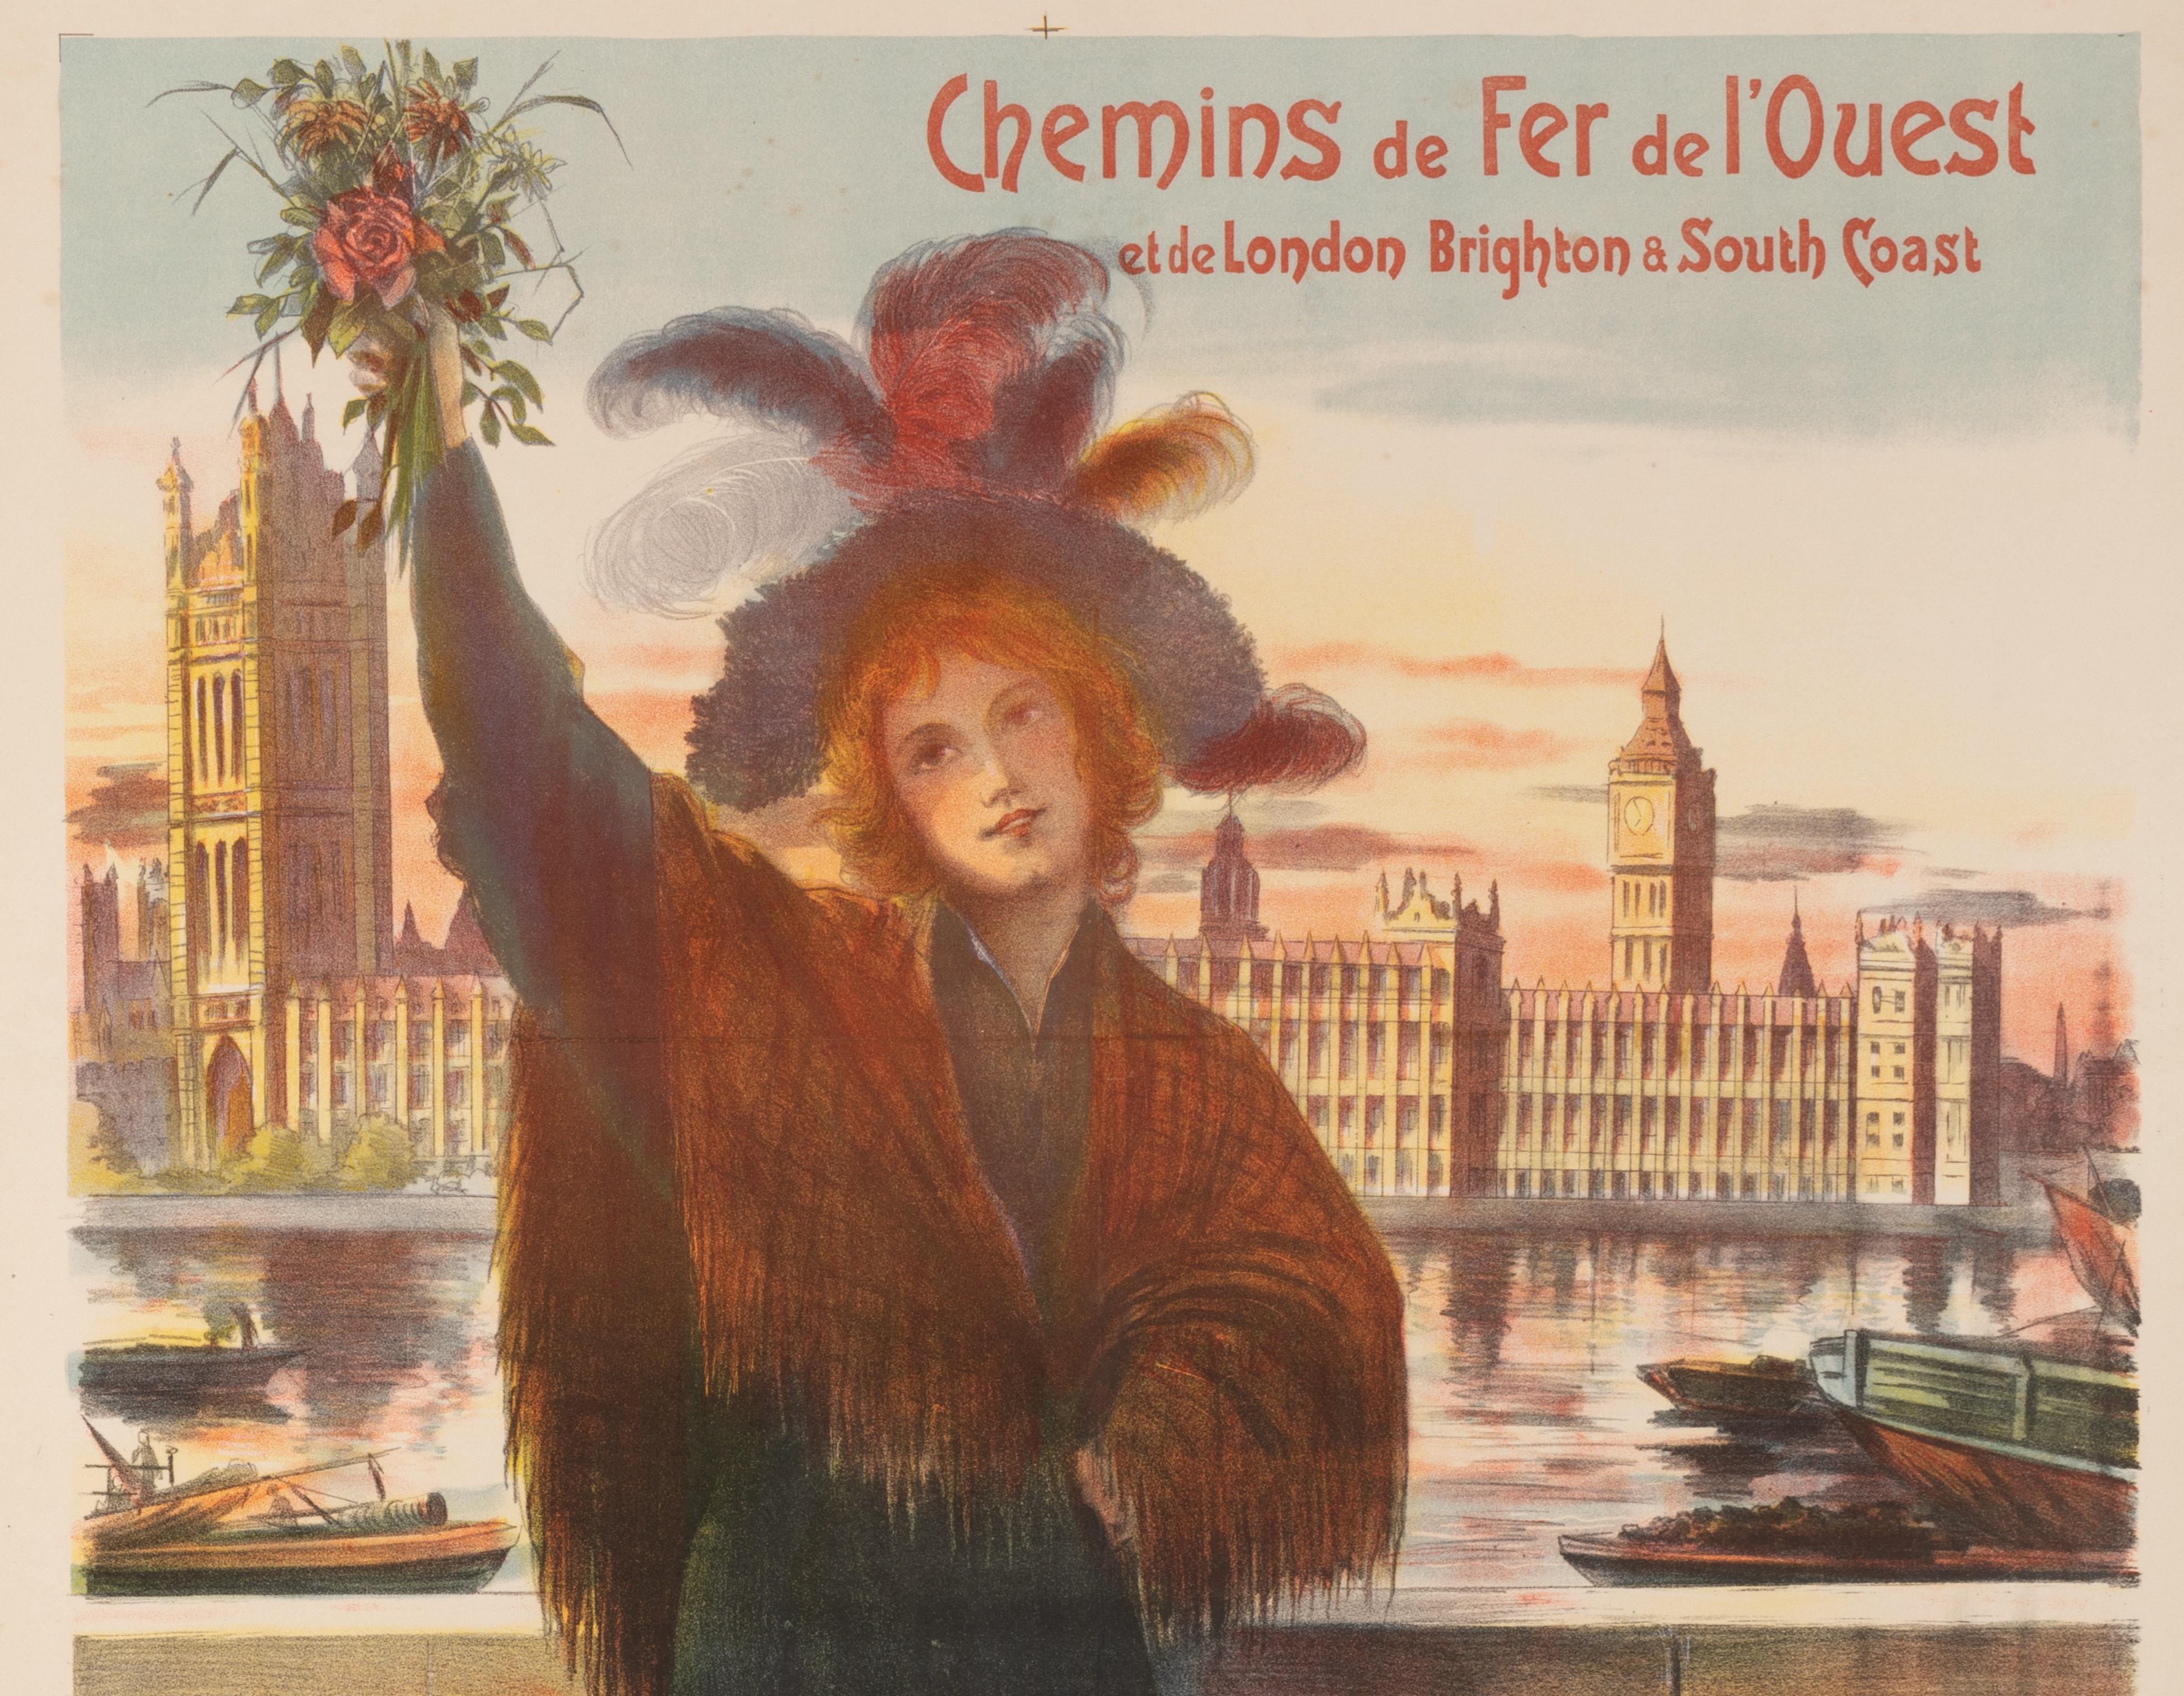 Original Vintage Poster by Arsène Naulez produced in 1904 to promote tourism between Paris and London.

Artist: Arsène Naulez
Title: Chemins de Fer de L'ouest – et de London Brighton & South Coast
Date: 1904
Size (w x h): 26.4 x 39.4 in / 67 x 100